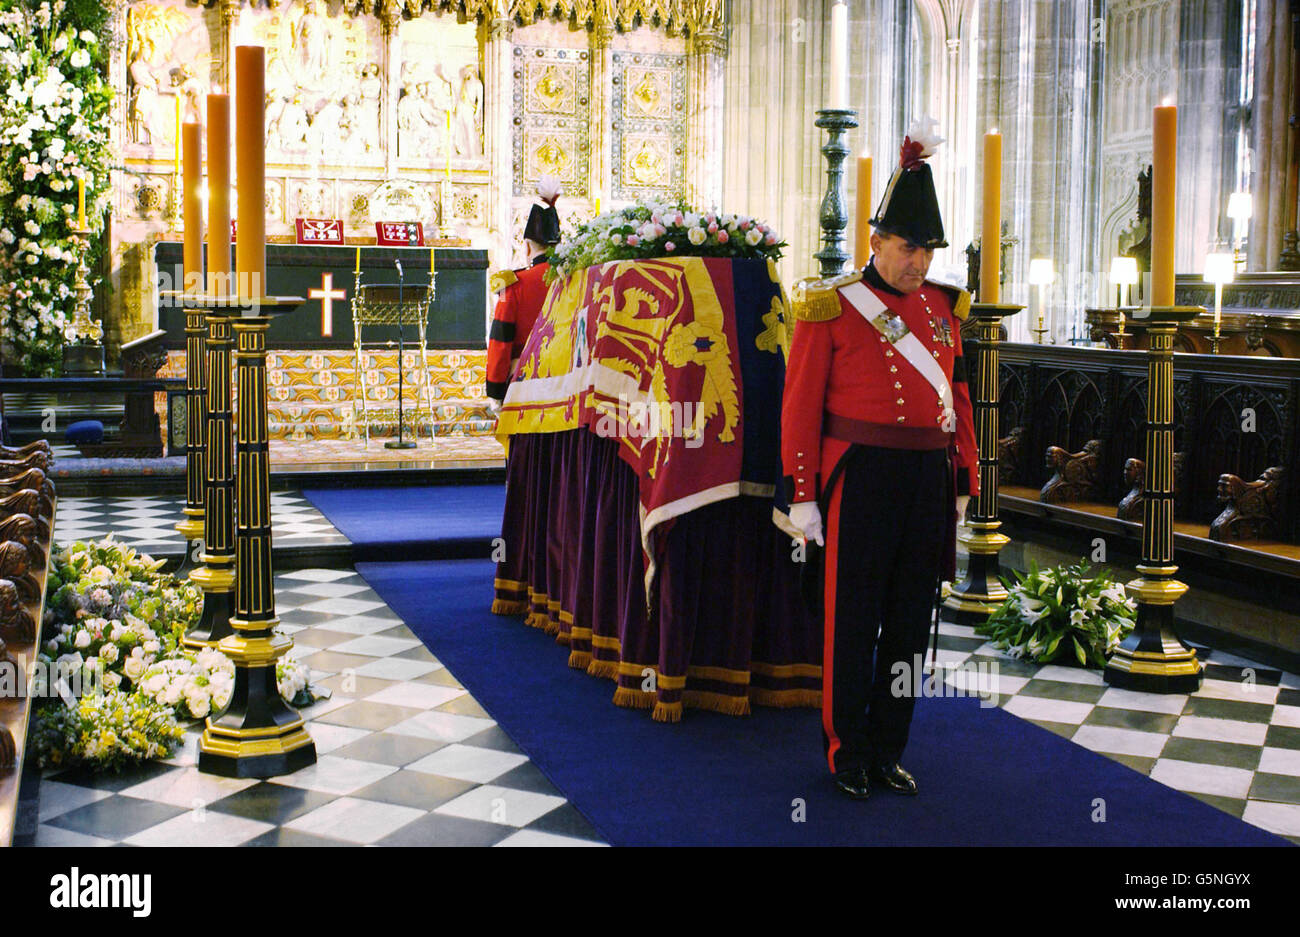 Zwei Militärritter bewachen den Sarg von Prinzessin Margaret vor ihrer Beerdigung in der St. George's Chapel im Schloss Windsor. Rund 400 Freunde und Mitarbeiter wurden erwartet. Prinzessin Margaret, die jüngere Schwester der britischen Königin Elizabeth II., starb am Samstag im Alter von 71 Jahren. Stockfoto